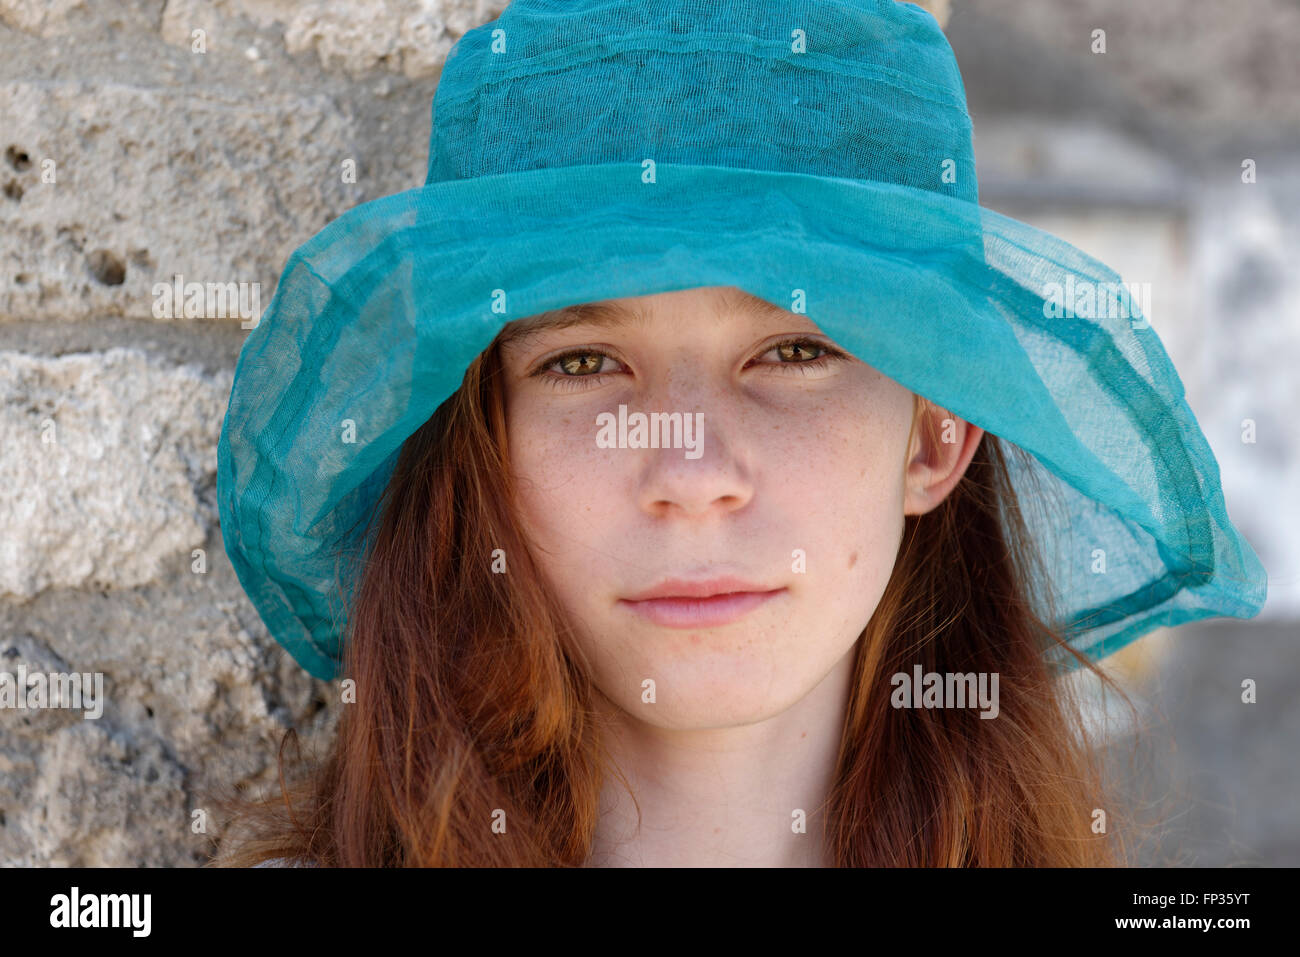 I Capelli rossi ragazza con un turchese sun hat cercando seriamente, ritratto, Italia Foto Stock